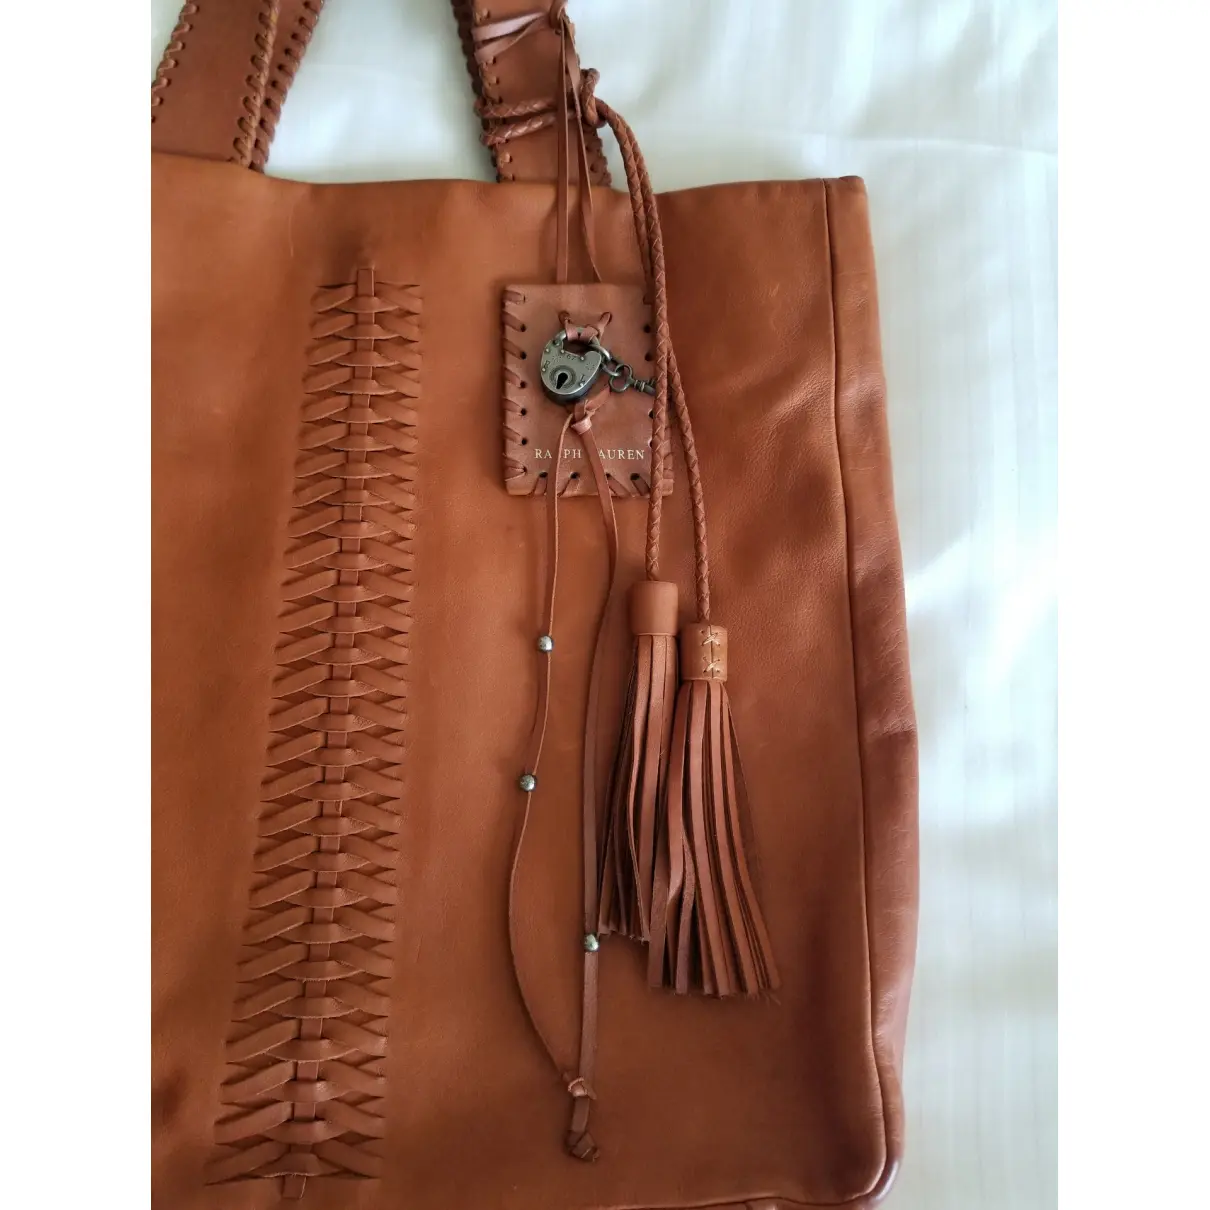 Leather handbag Ralph Lauren - Vintage